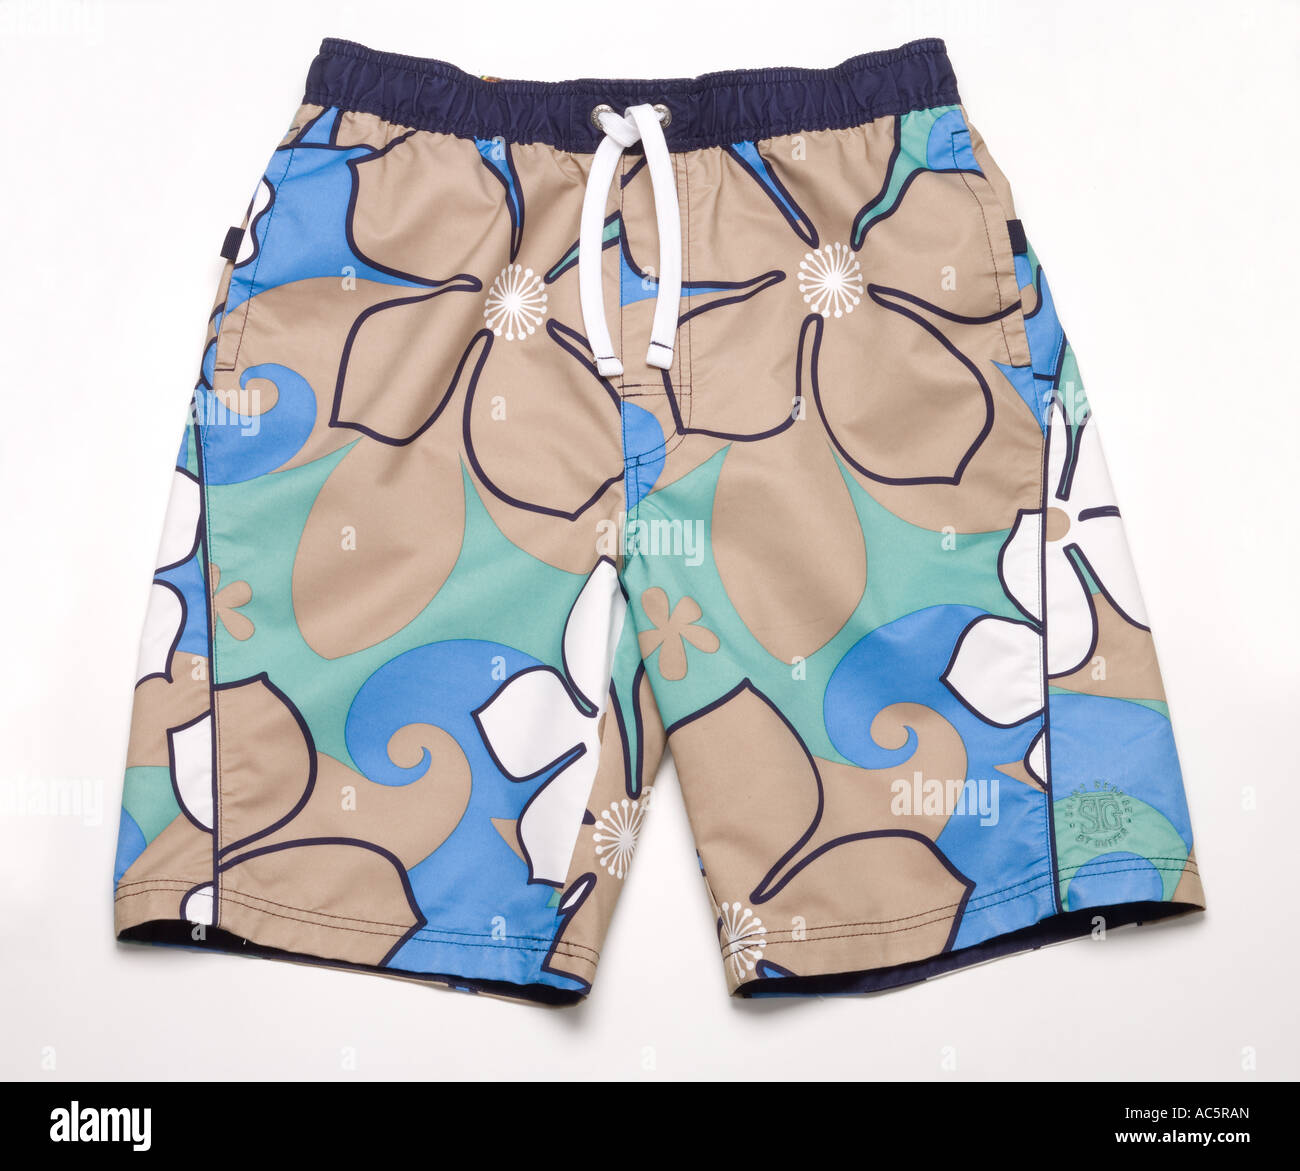 mens beach shorts Stock Photo